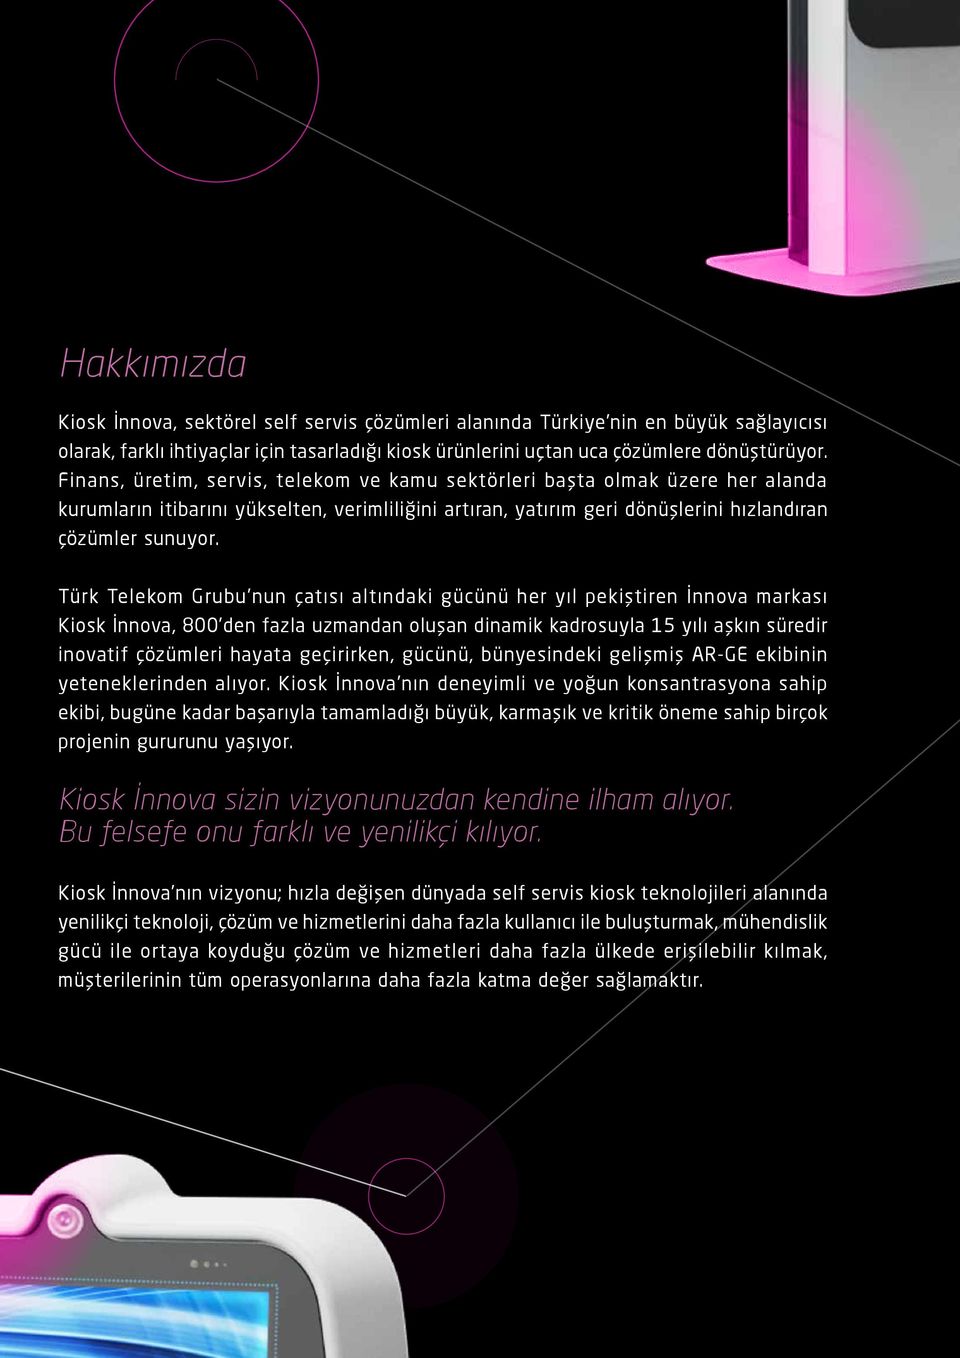 Türk Telekom Grubu nun çatısı altındaki gücünü her yıl pekiştiren İnnova markası Kiosk İnnova, 800 den fazla uzmandan oluşan dinamik kadrosuyla 15 yılı aşkın süredir inovatif çözümleri hayata